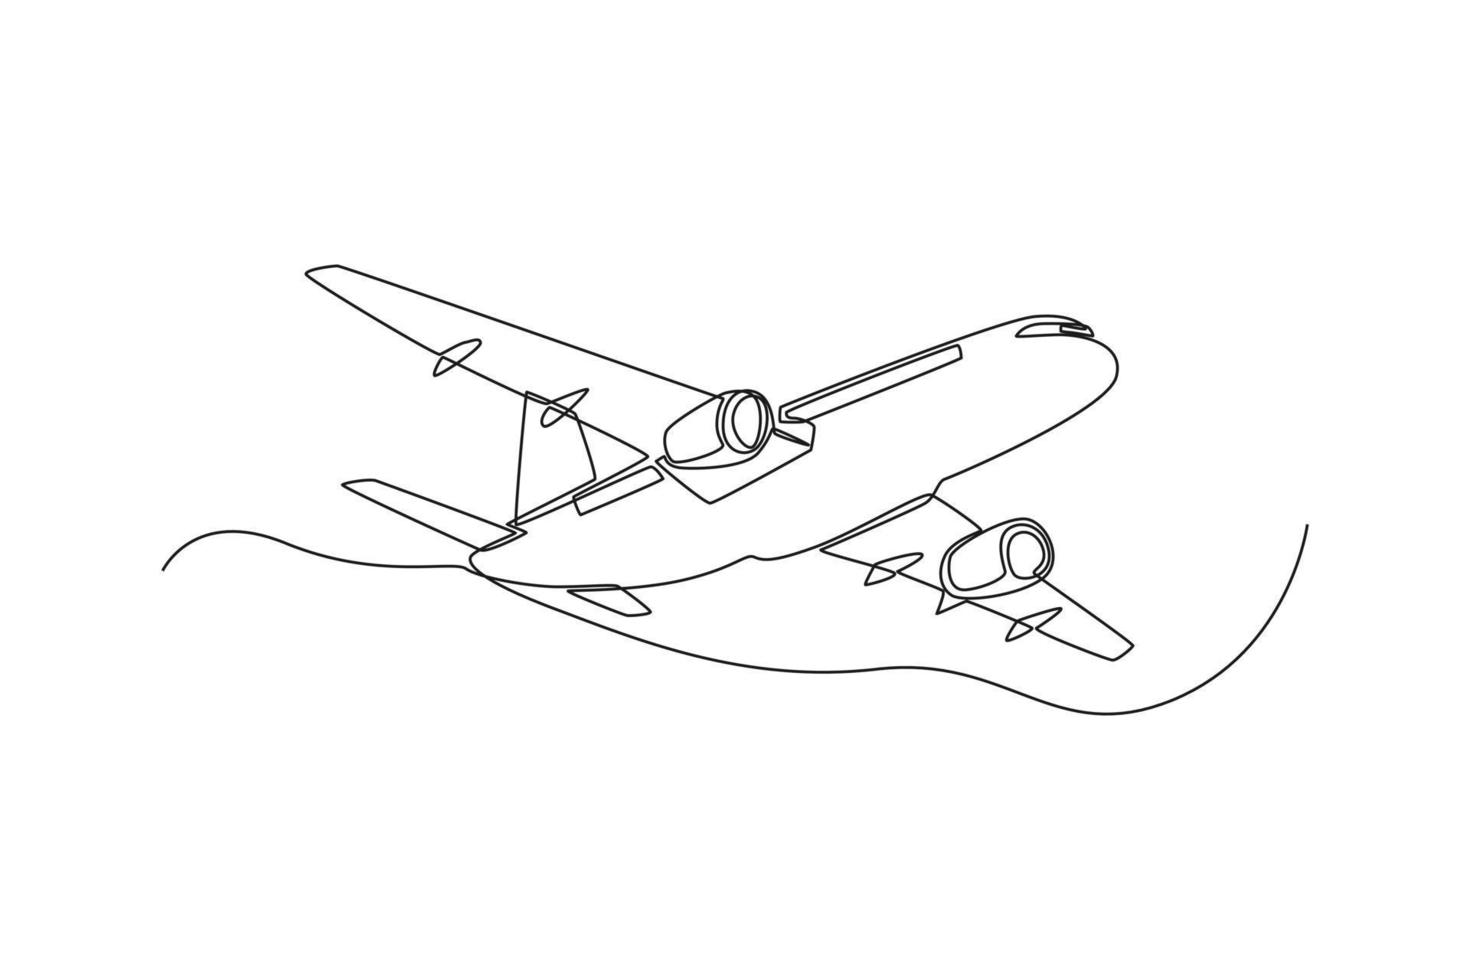 einzelnes strichzeichnungsflugzeug. Fahrzeugkonzept. ununterbrochene Linie zeichnen grafische Vektorillustration des Designs. vektor